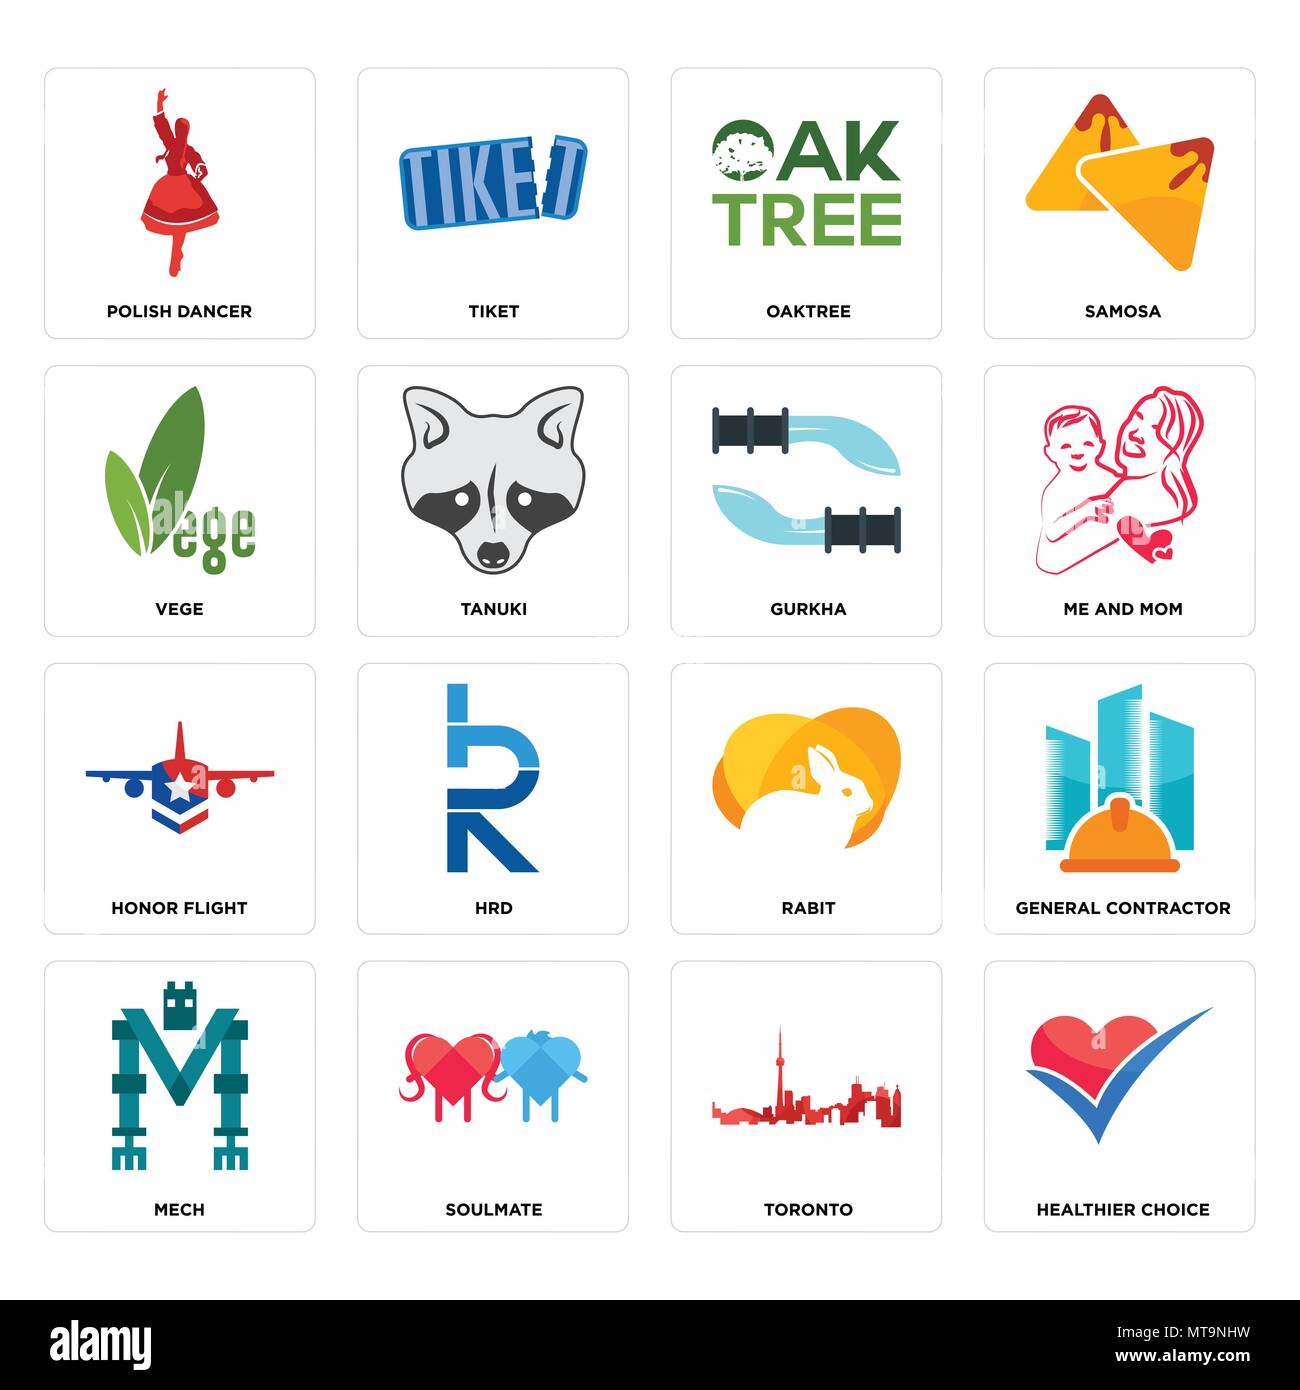 Set di 16 semplici icone modificabile come scelta più salutare, Toronto, soulmate, mech, general contractor, ballerino polacco, vege, onore volo, gurkha can b Illustrazione Vettoriale